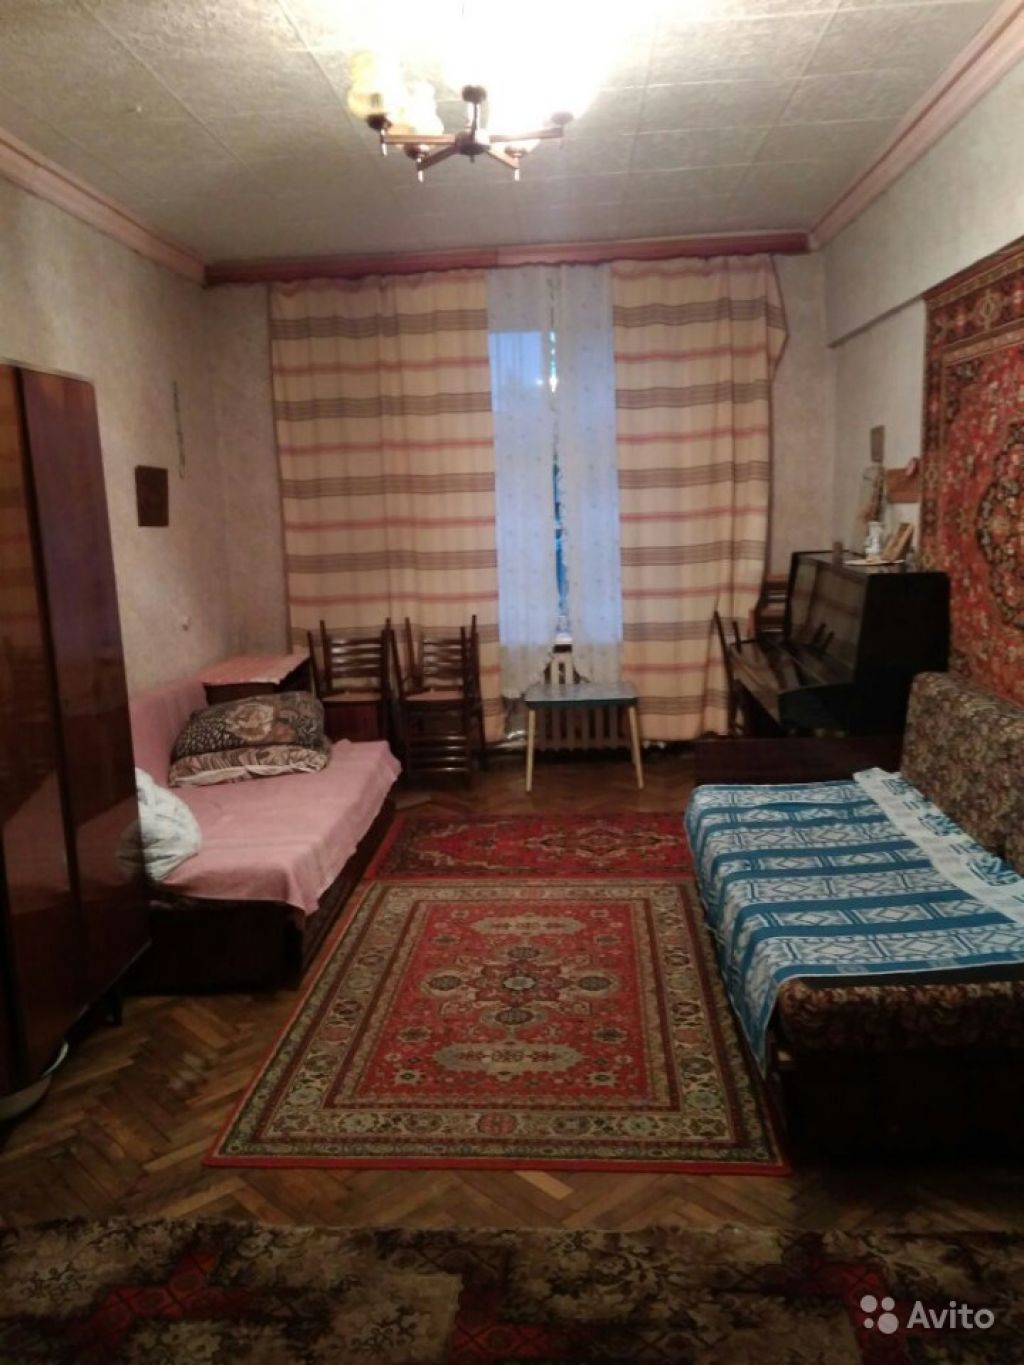 Продам комнату Комната 23.7 м² в 5-к квартире на 4 этаже 5-этажного кирпичного дома в Москве. Фото 1